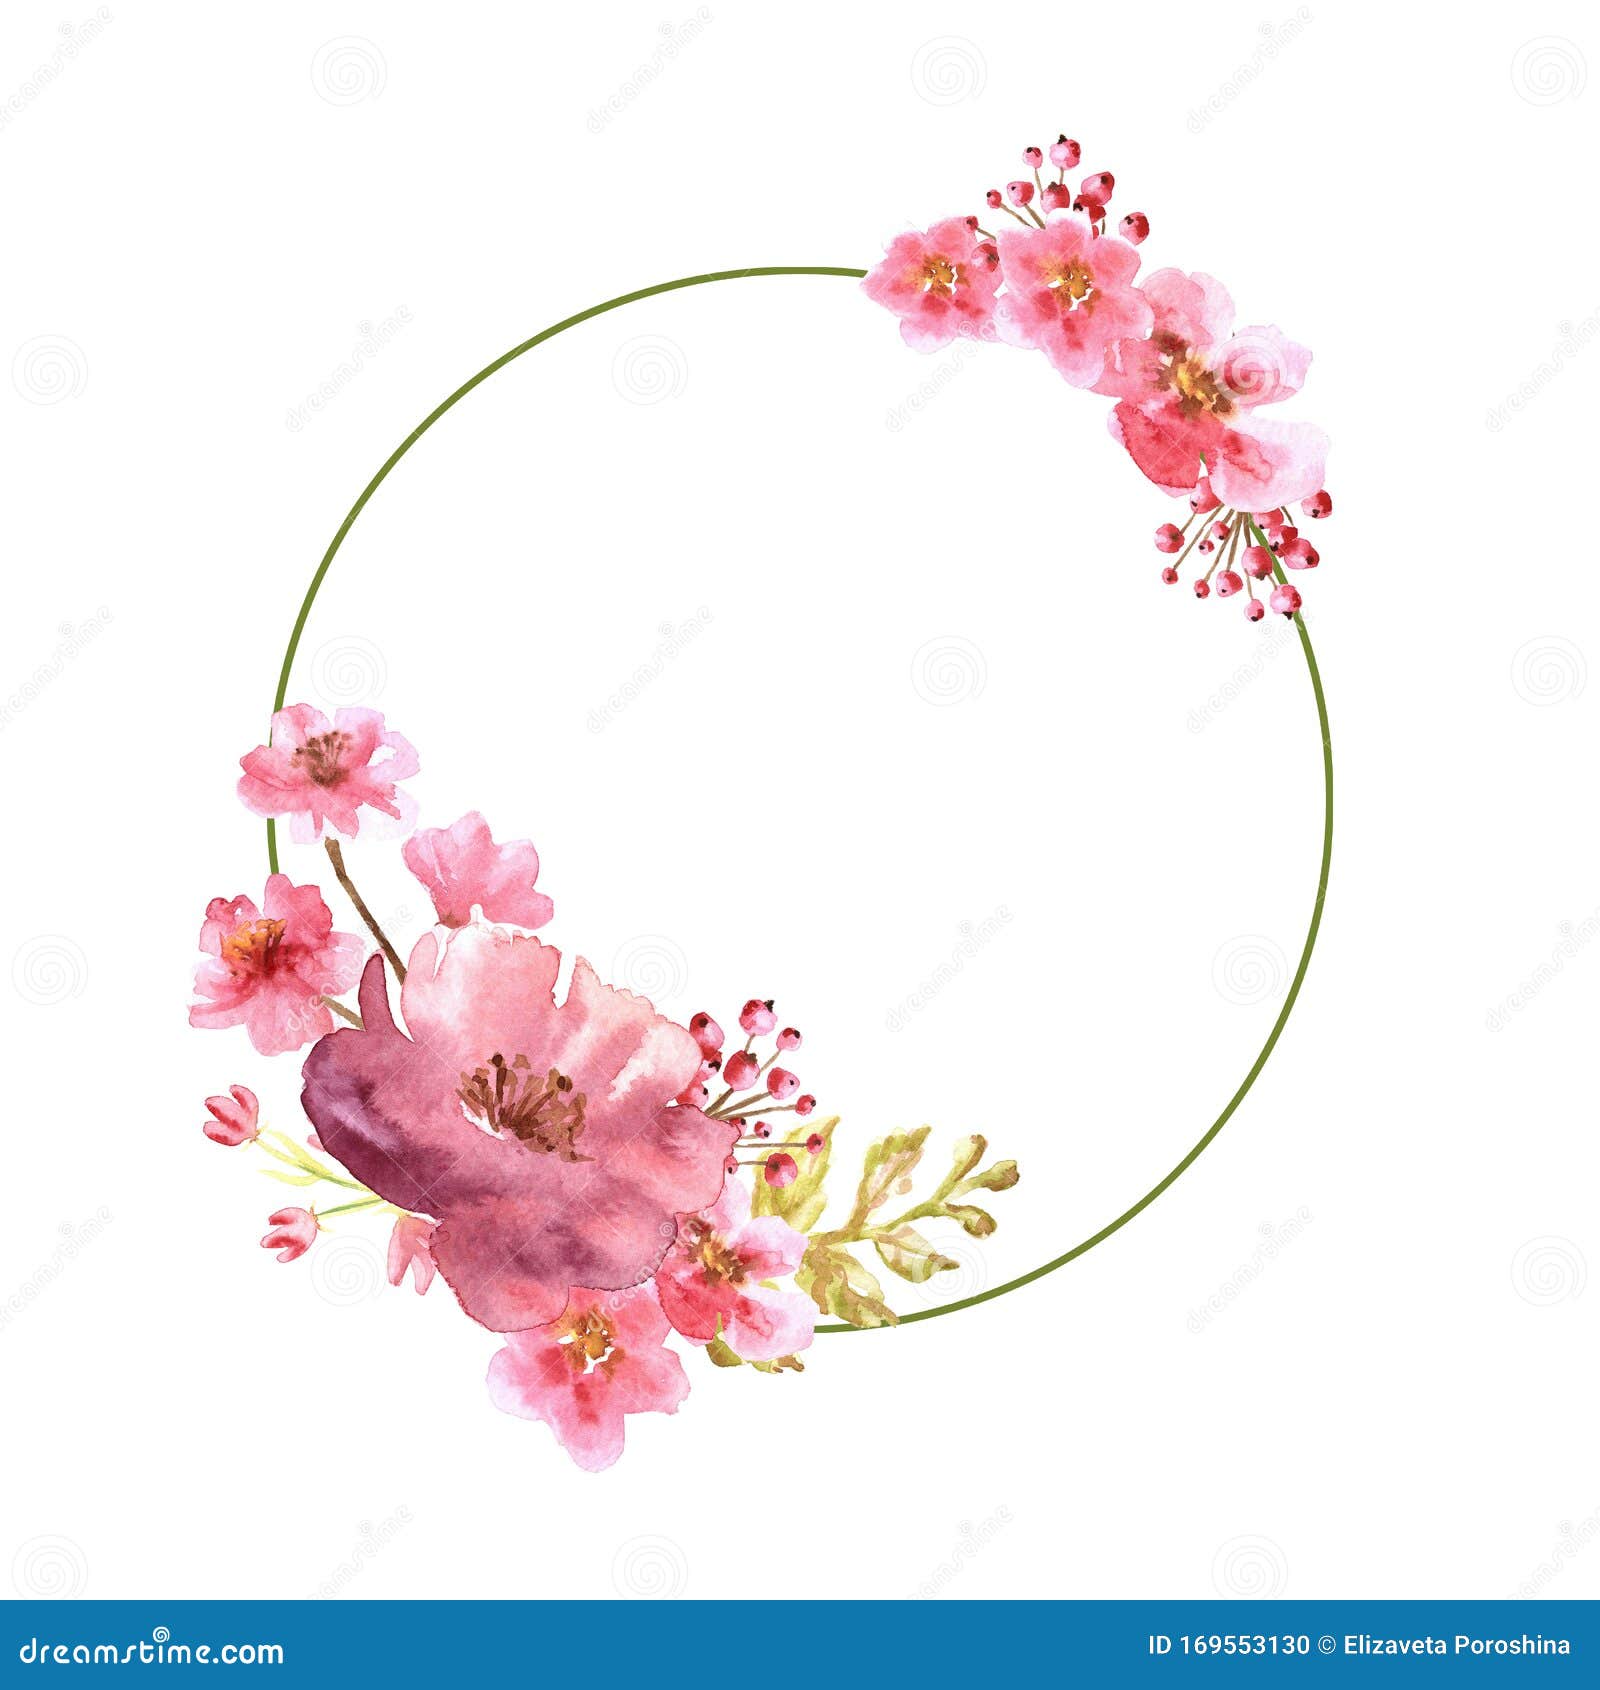 Khung hình tròn màu hồng thước nước hoa hiếm có với hoa cách điệu sẽ giúp trang trí cho chiếc điện thoại của bạn thêm phần sang trọng. Với thiết kế tinh tế và chất liệu nhẹ nhàng, bạn có thể dễ dàng mang nó theo bên mình.